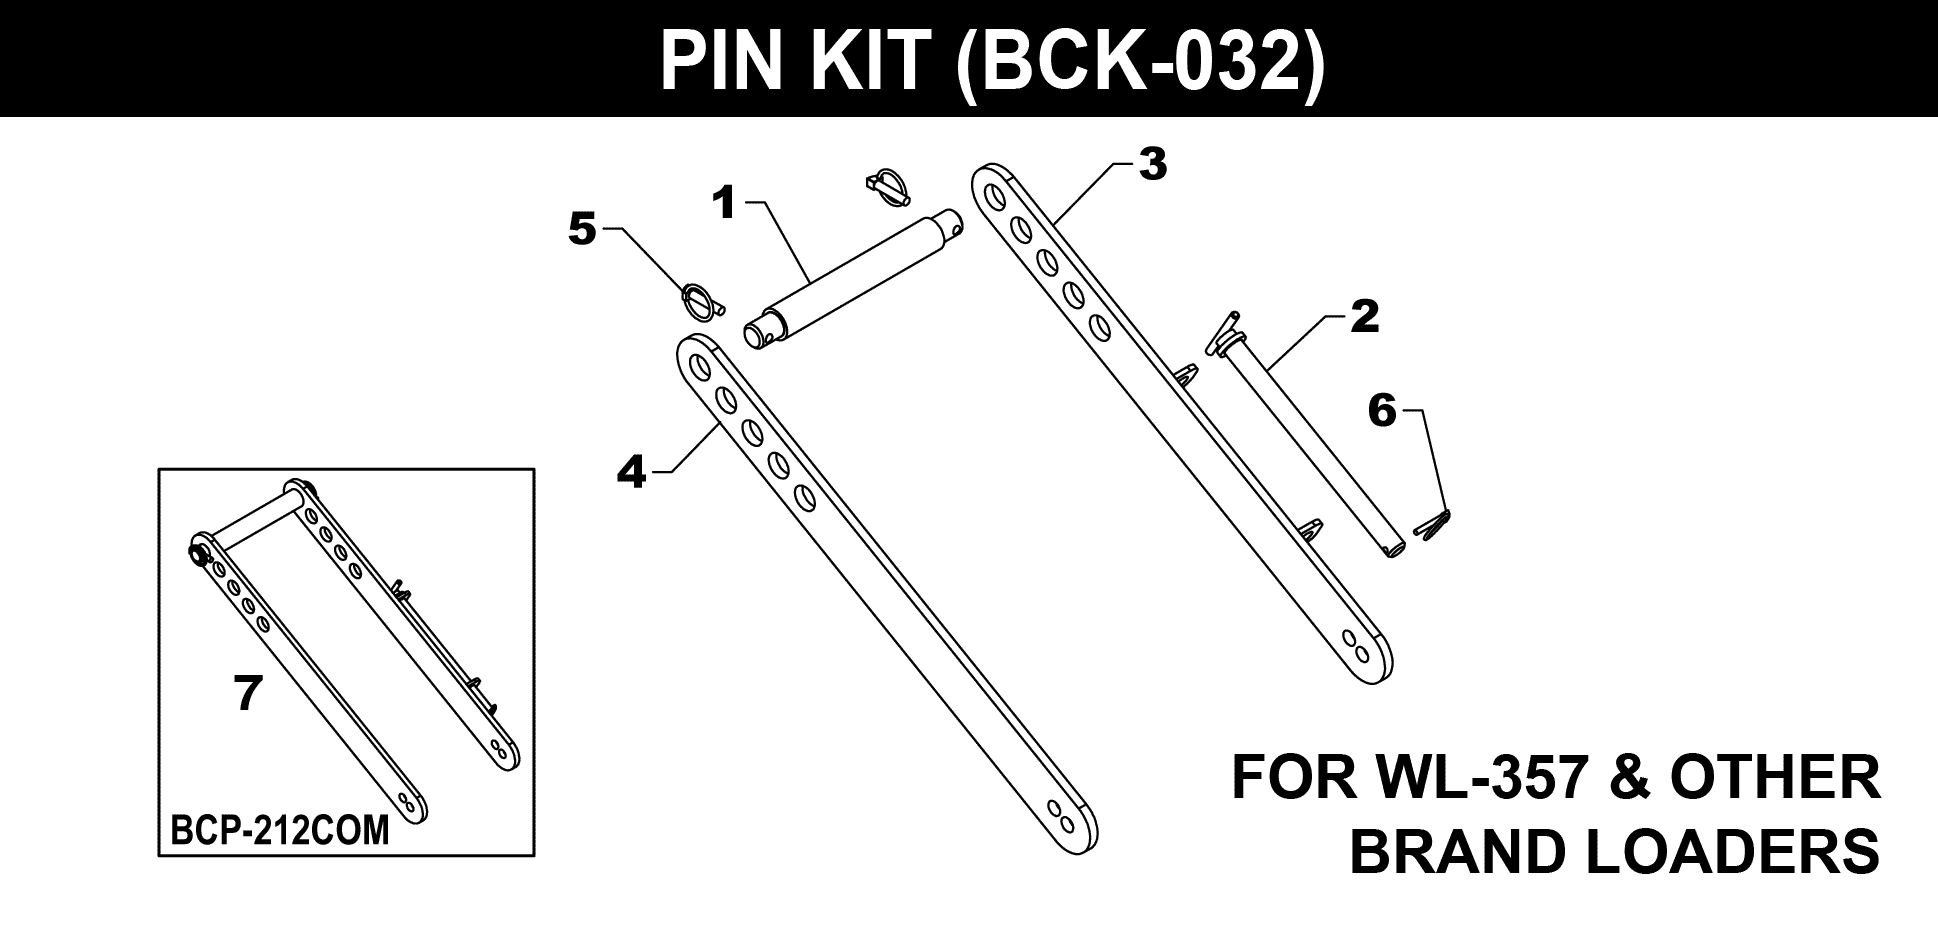 BCK-032 Pin Kit